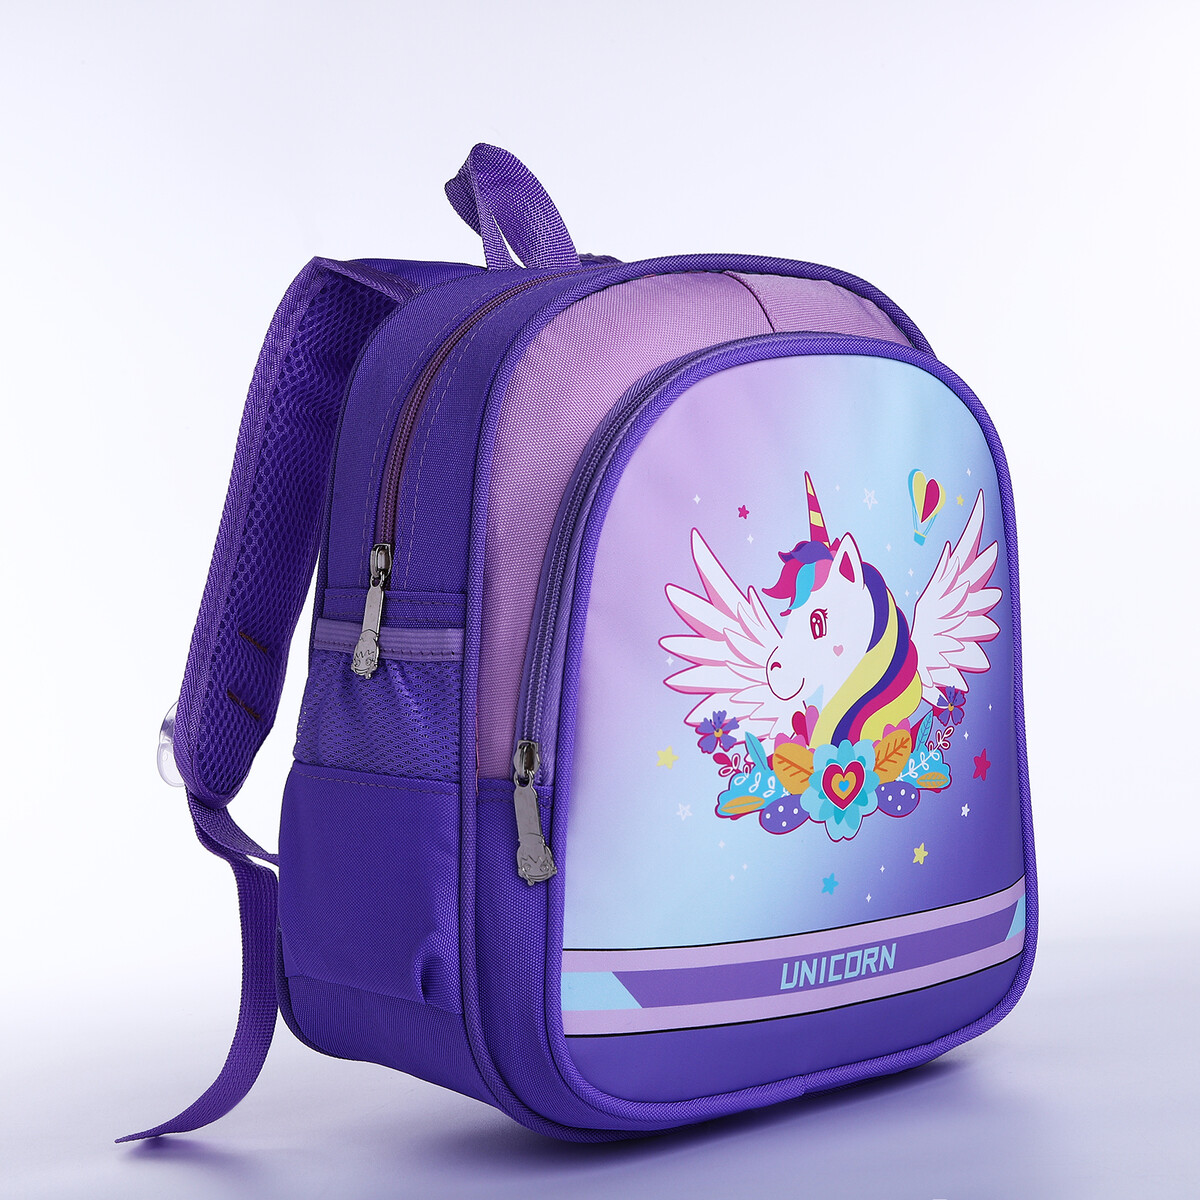 Рюкзак детский на молнии, 3 наружных кармана, цвет фиолетовый рюкзак детский на молнии 3 наружных кармана фиолетовый